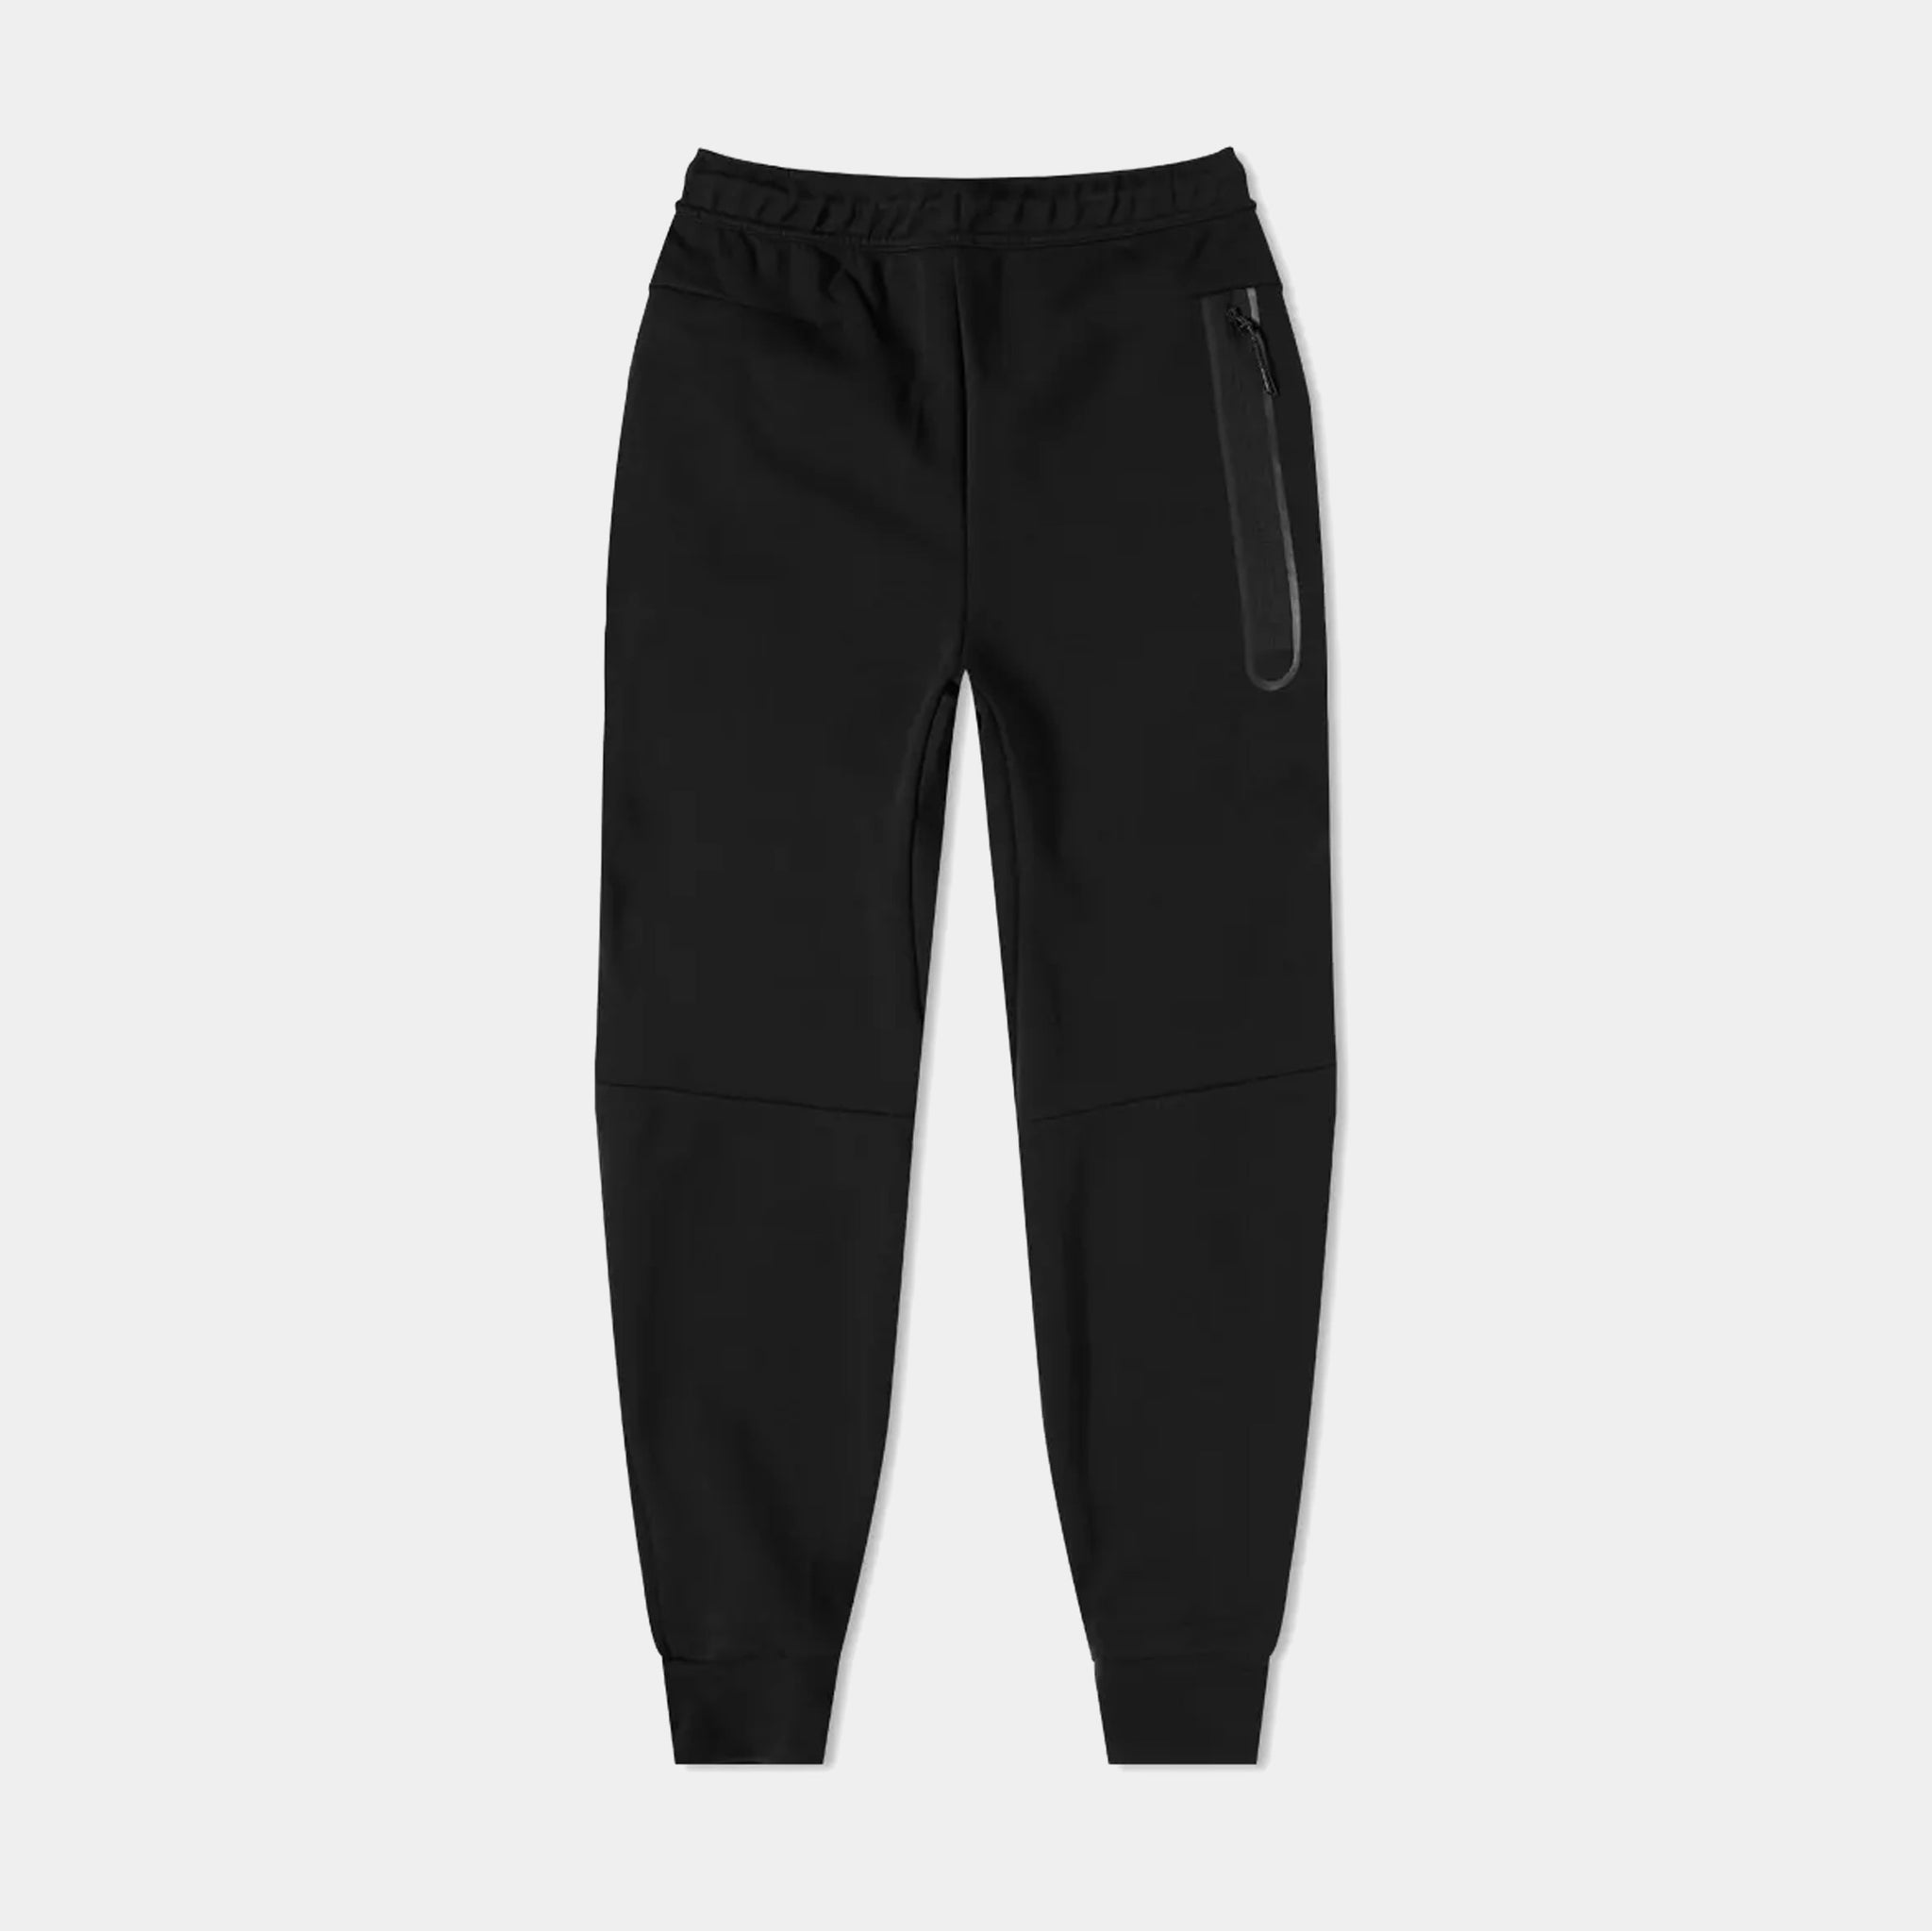 CU4495-410] Mens Nike Sportswear Tech Fleece Jogger Pants